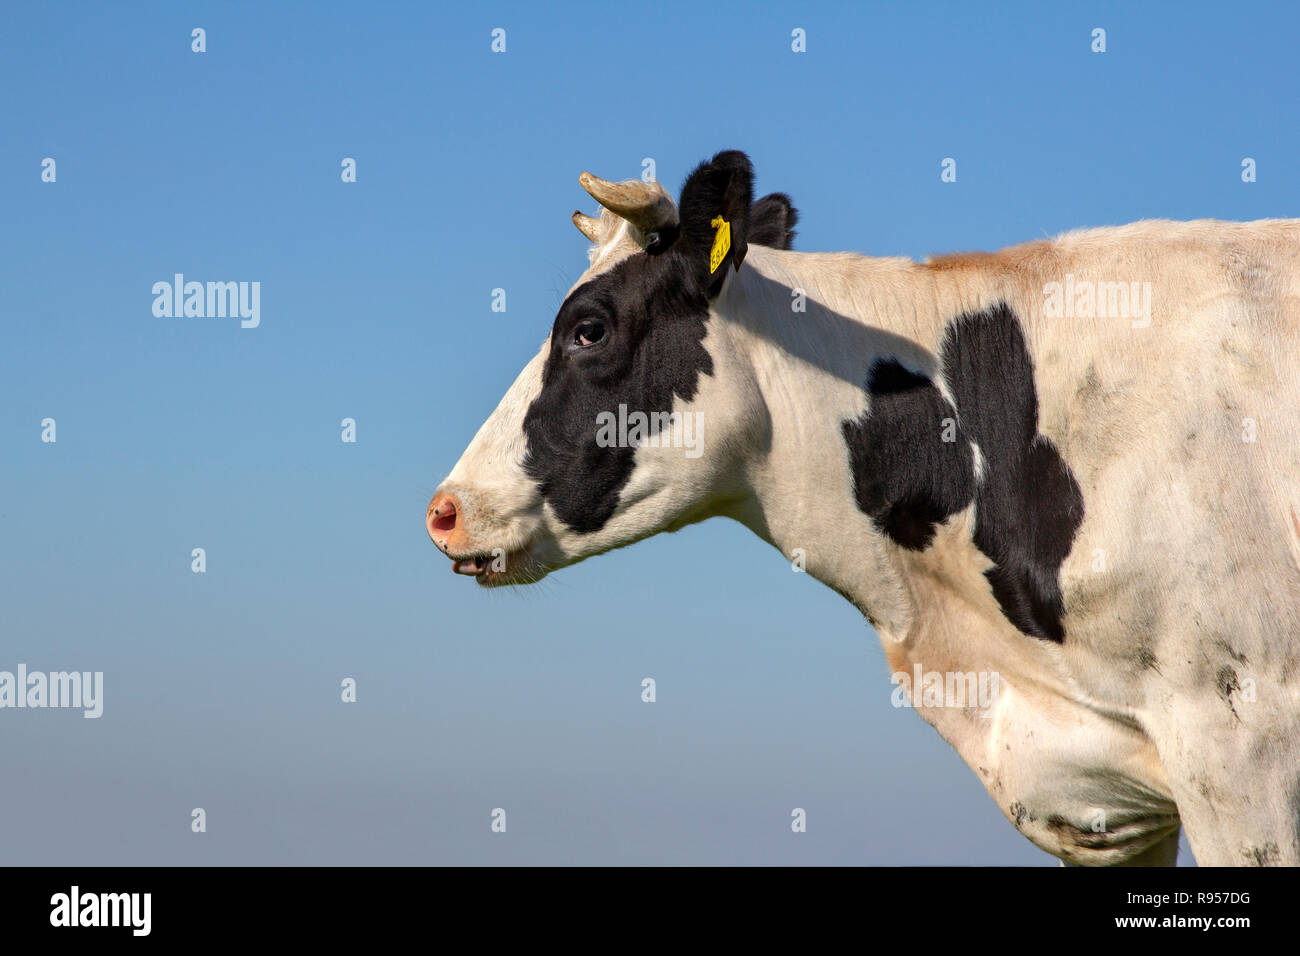 Portrait d'une vache noir et blanc avec des cornes, de la langue hors de sa bouche, nez rose, jaune Les marques auriculaires, les bovins de race Holstein, en profil et un ciel bleu. Banque D'Images